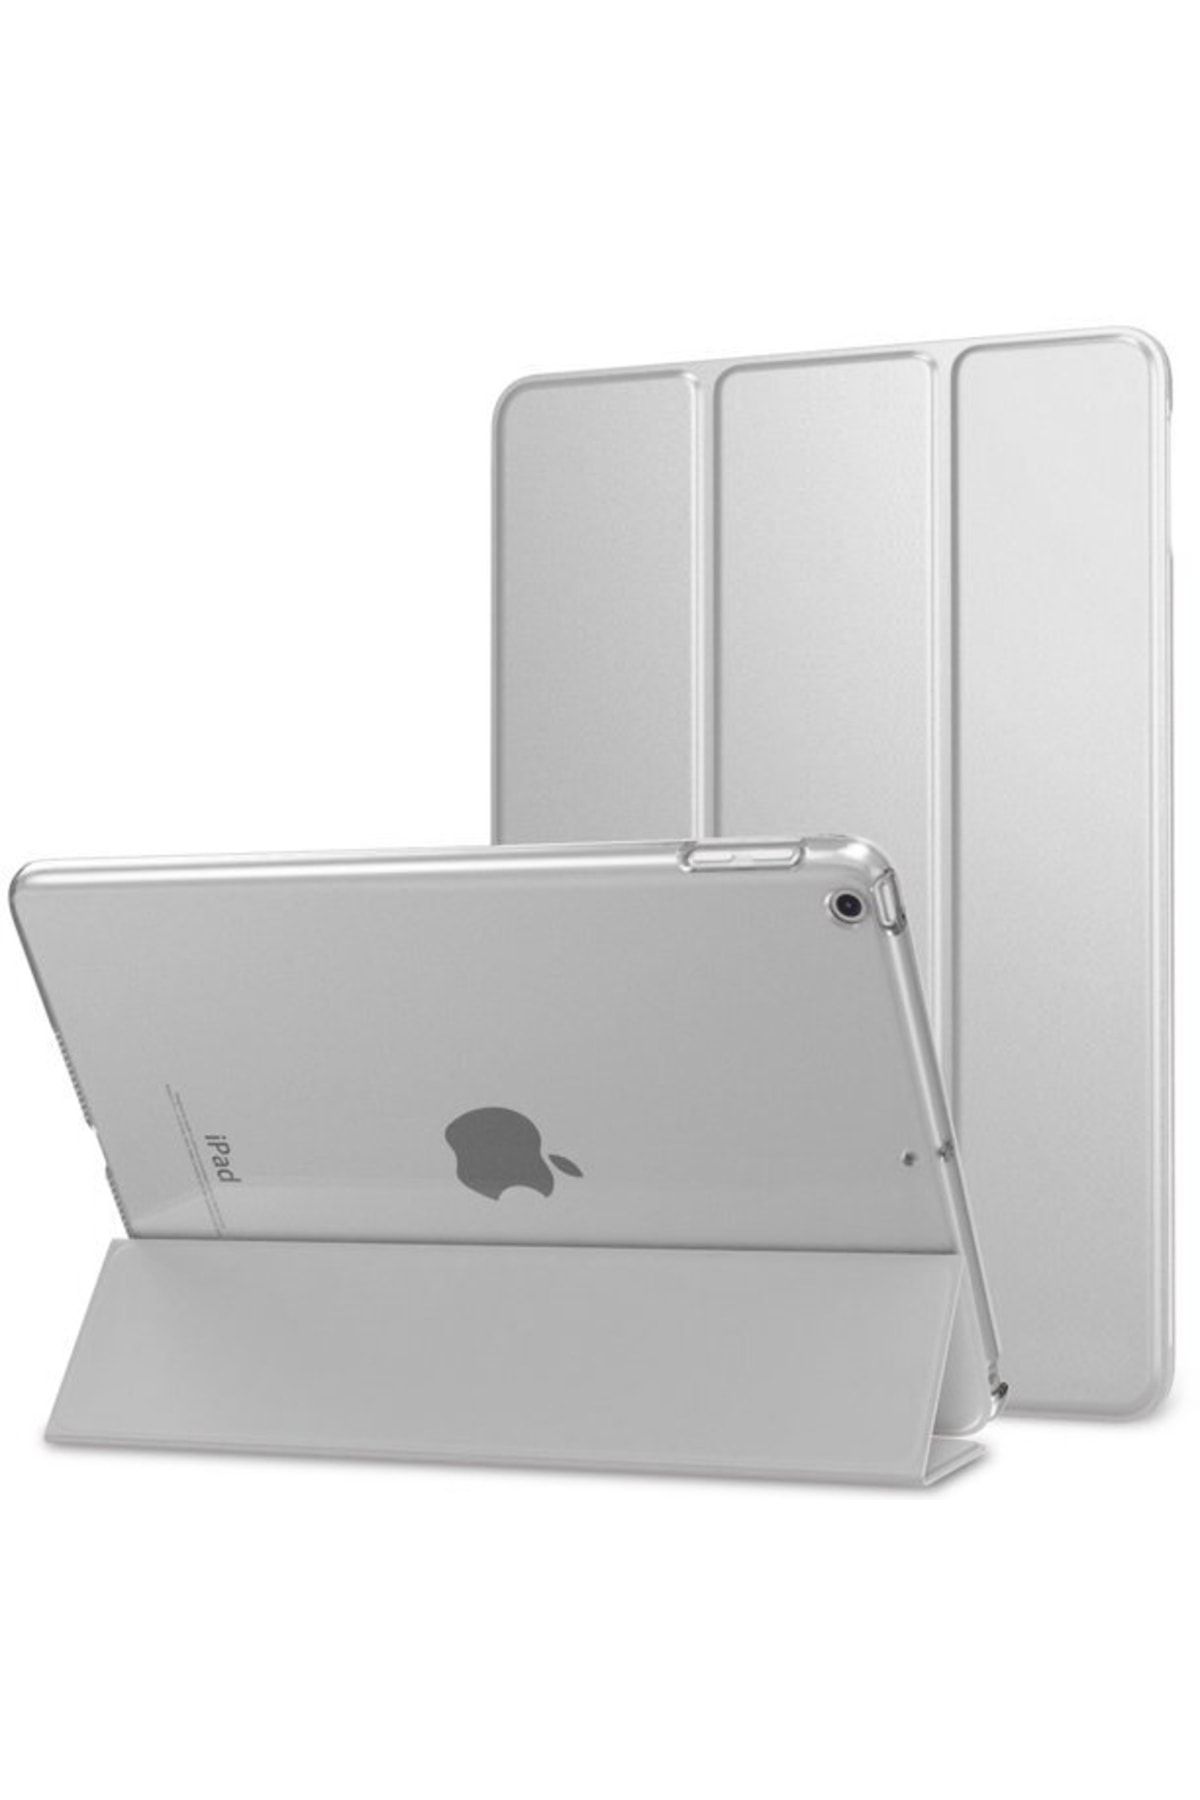 Fuchsia Ipad Mini 1.2.3.nesil Uyumlu Smart Cover Standlı Katlanabilir Akıllı 1-1 Tablet Kılıfı